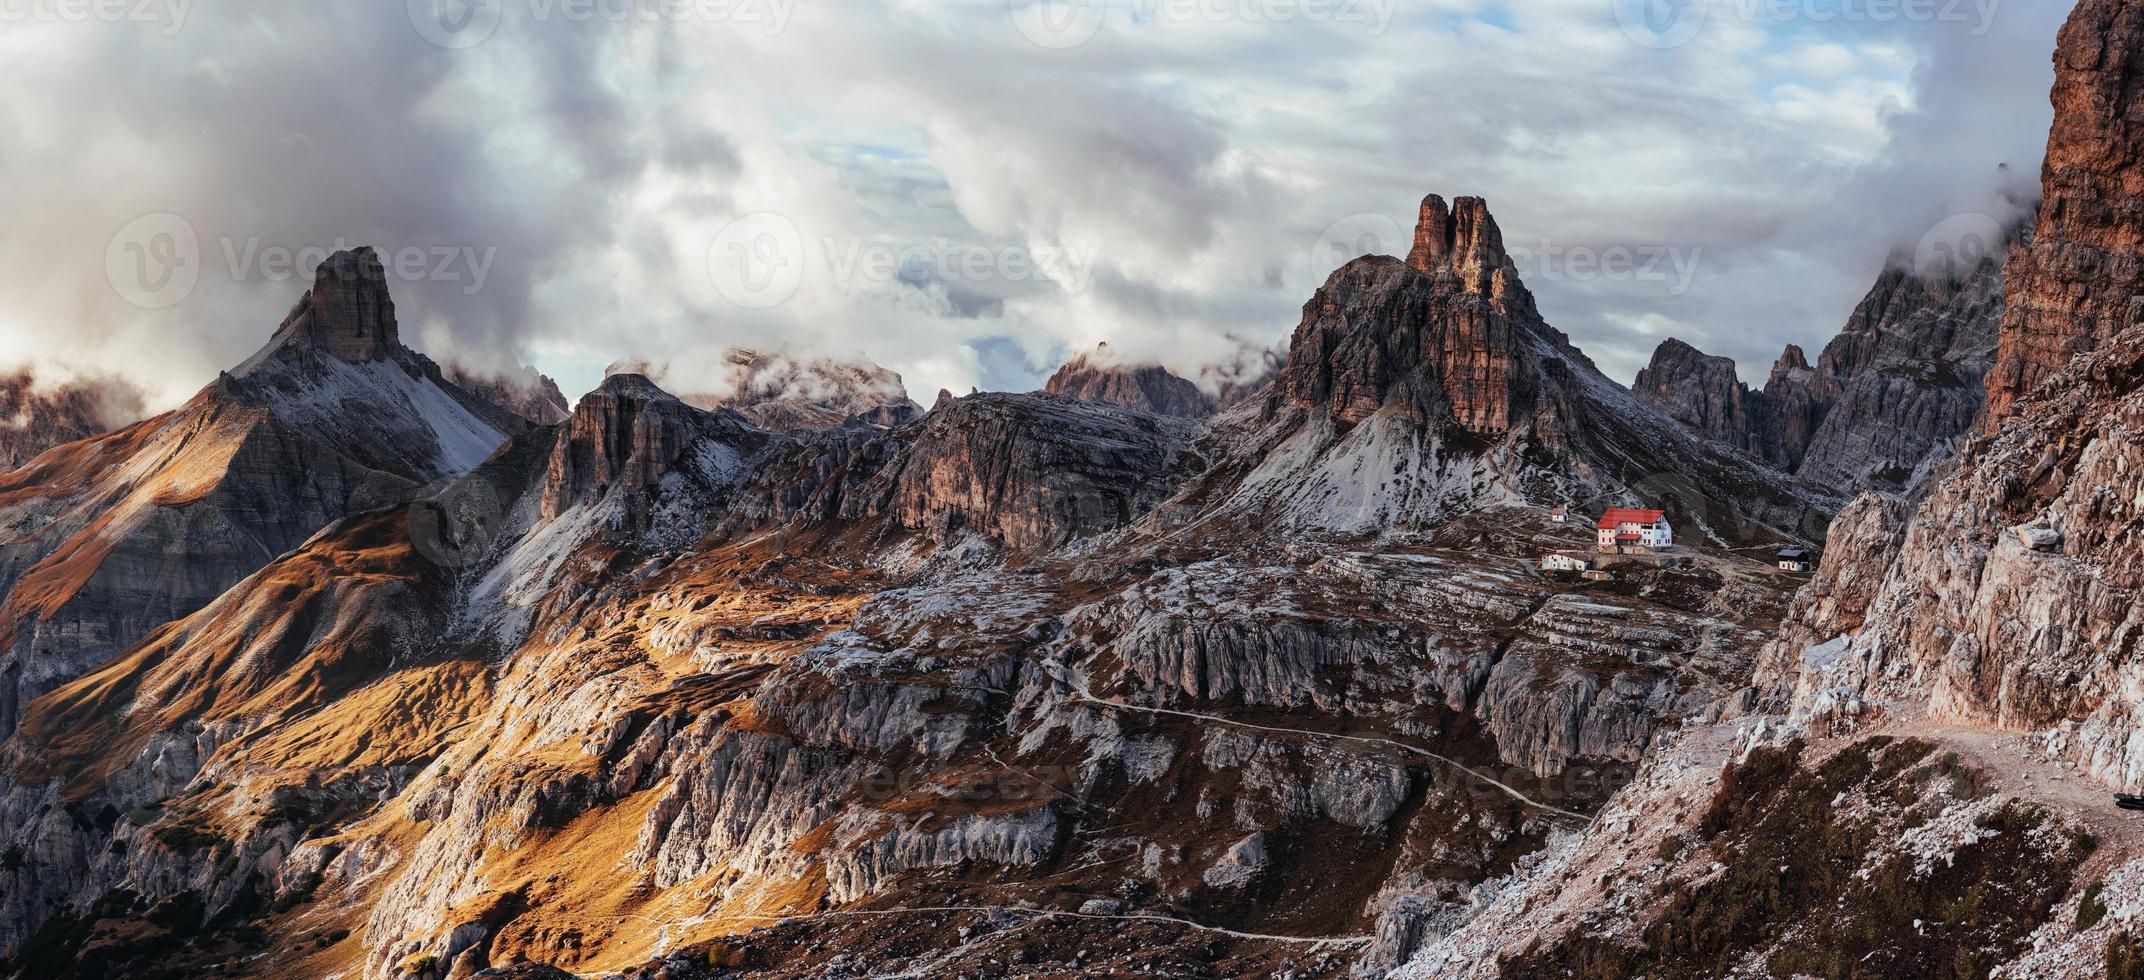 Leben am Rand, buchstäblich. touristische Gebäude, die auf die Leute warten, die wollen, führt durch diese majestätischen Dolomiten. Panoramafoto foto